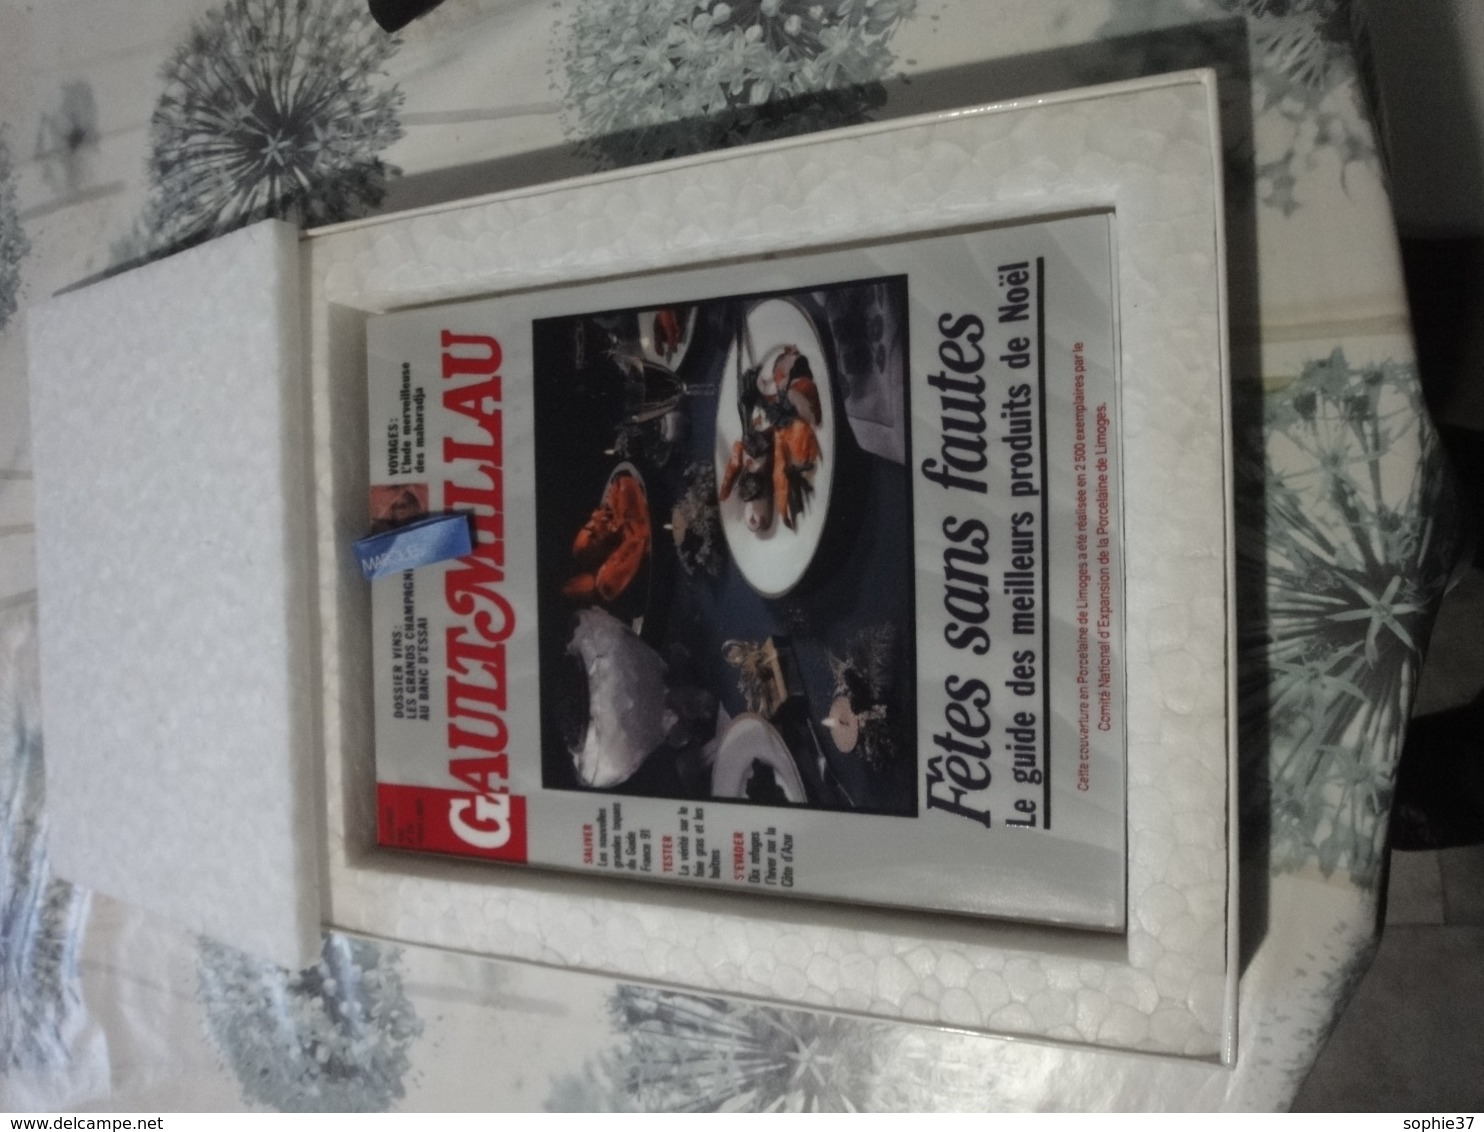 N° Spécial "Gault Miliau" Avec Couverture En Porcelaine De Limoges édité En Novembre 1990 - Koken & Wijn